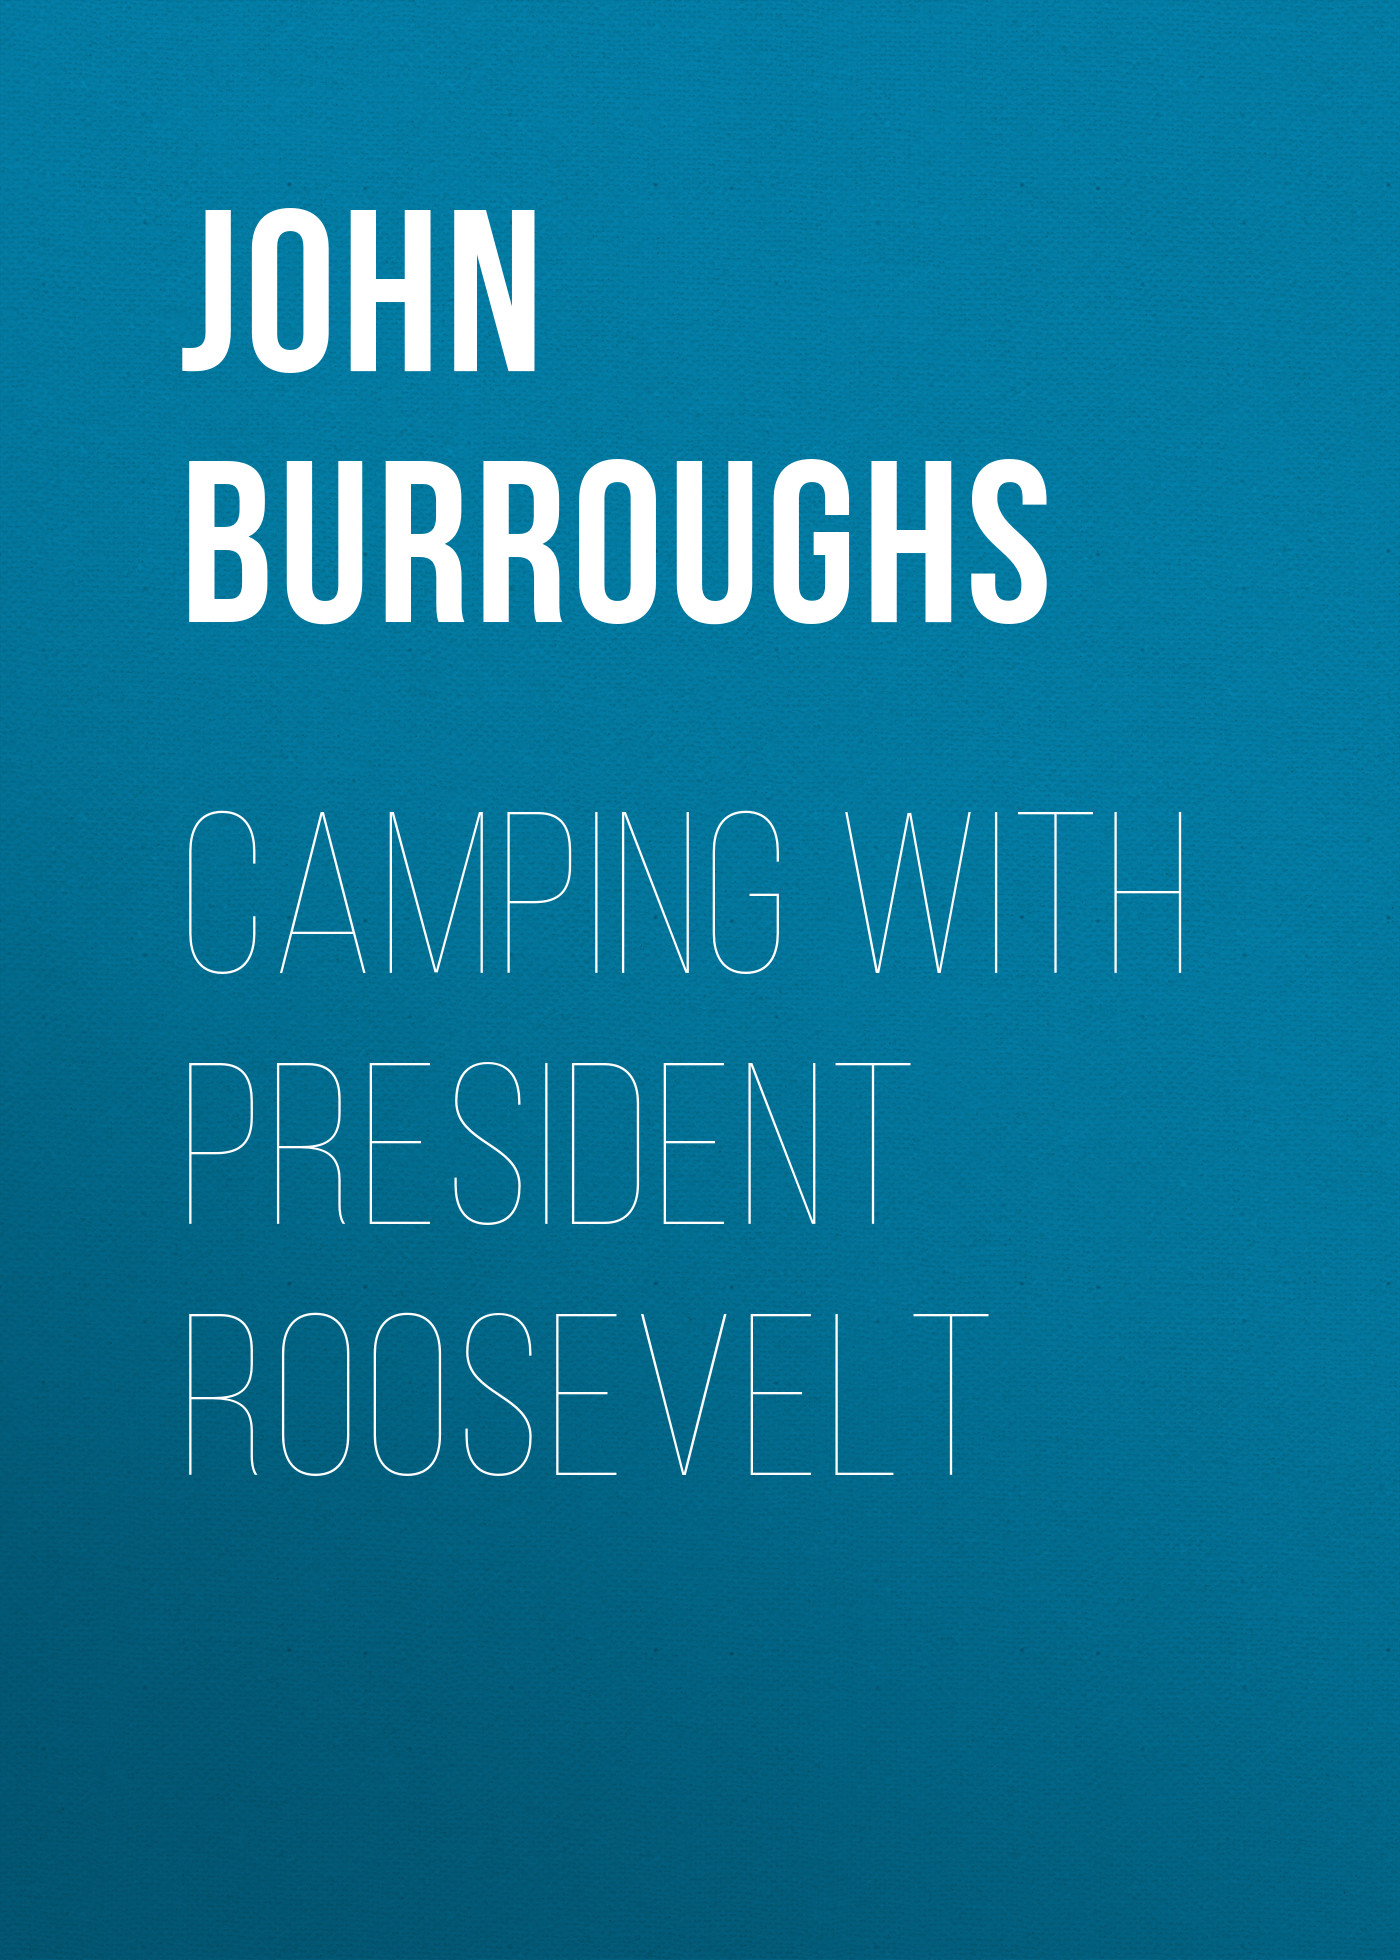 Книга Camping with President Roosevelt из серии , созданная John Burroughs, может относится к жанру Зарубежная старинная литература, Зарубежная классика. Стоимость электронной книги Camping with President Roosevelt с идентификатором 24171988 составляет 0 руб.